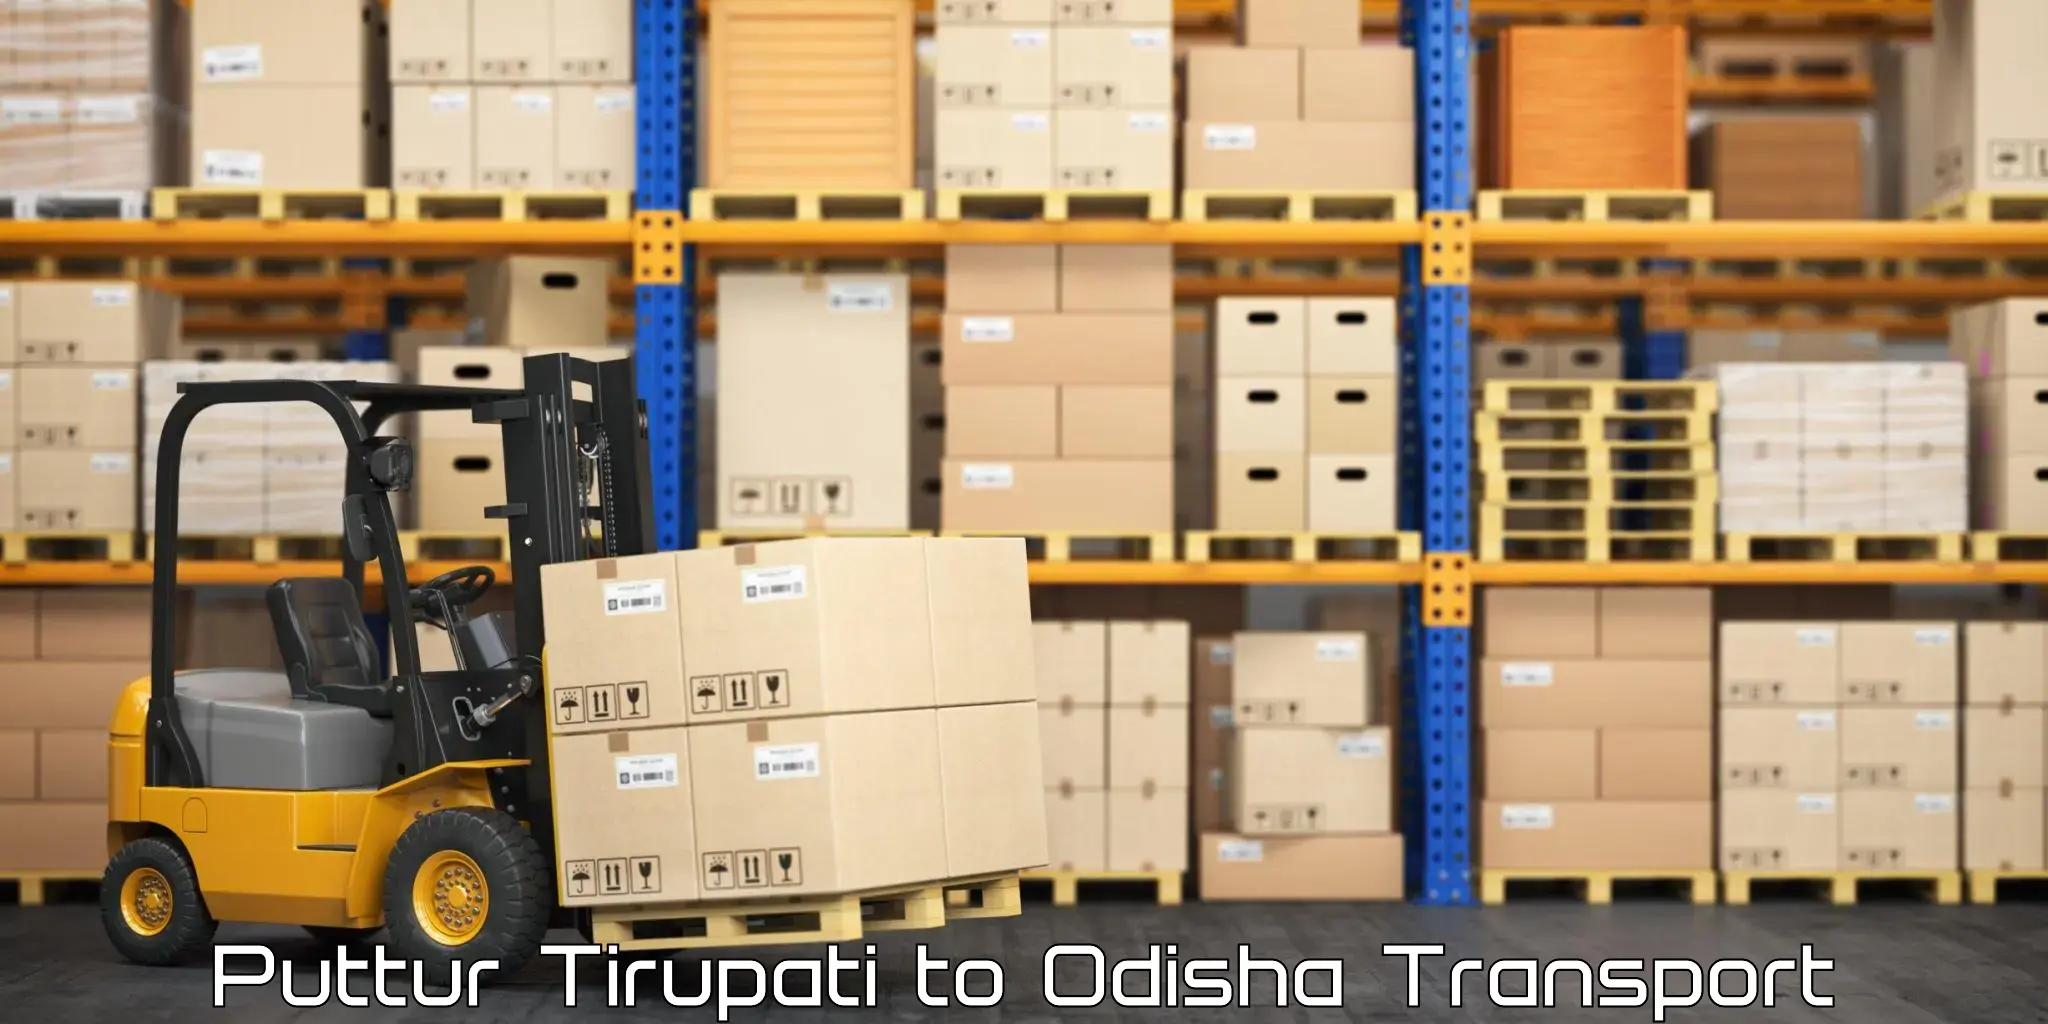 Daily parcel service transport in Puttur Tirupati to Gajapati